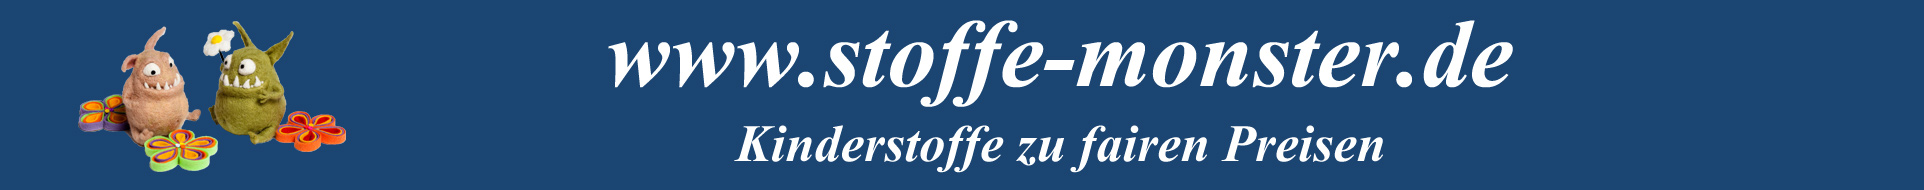 logo_stoffe_monster_de_kopf.jpg